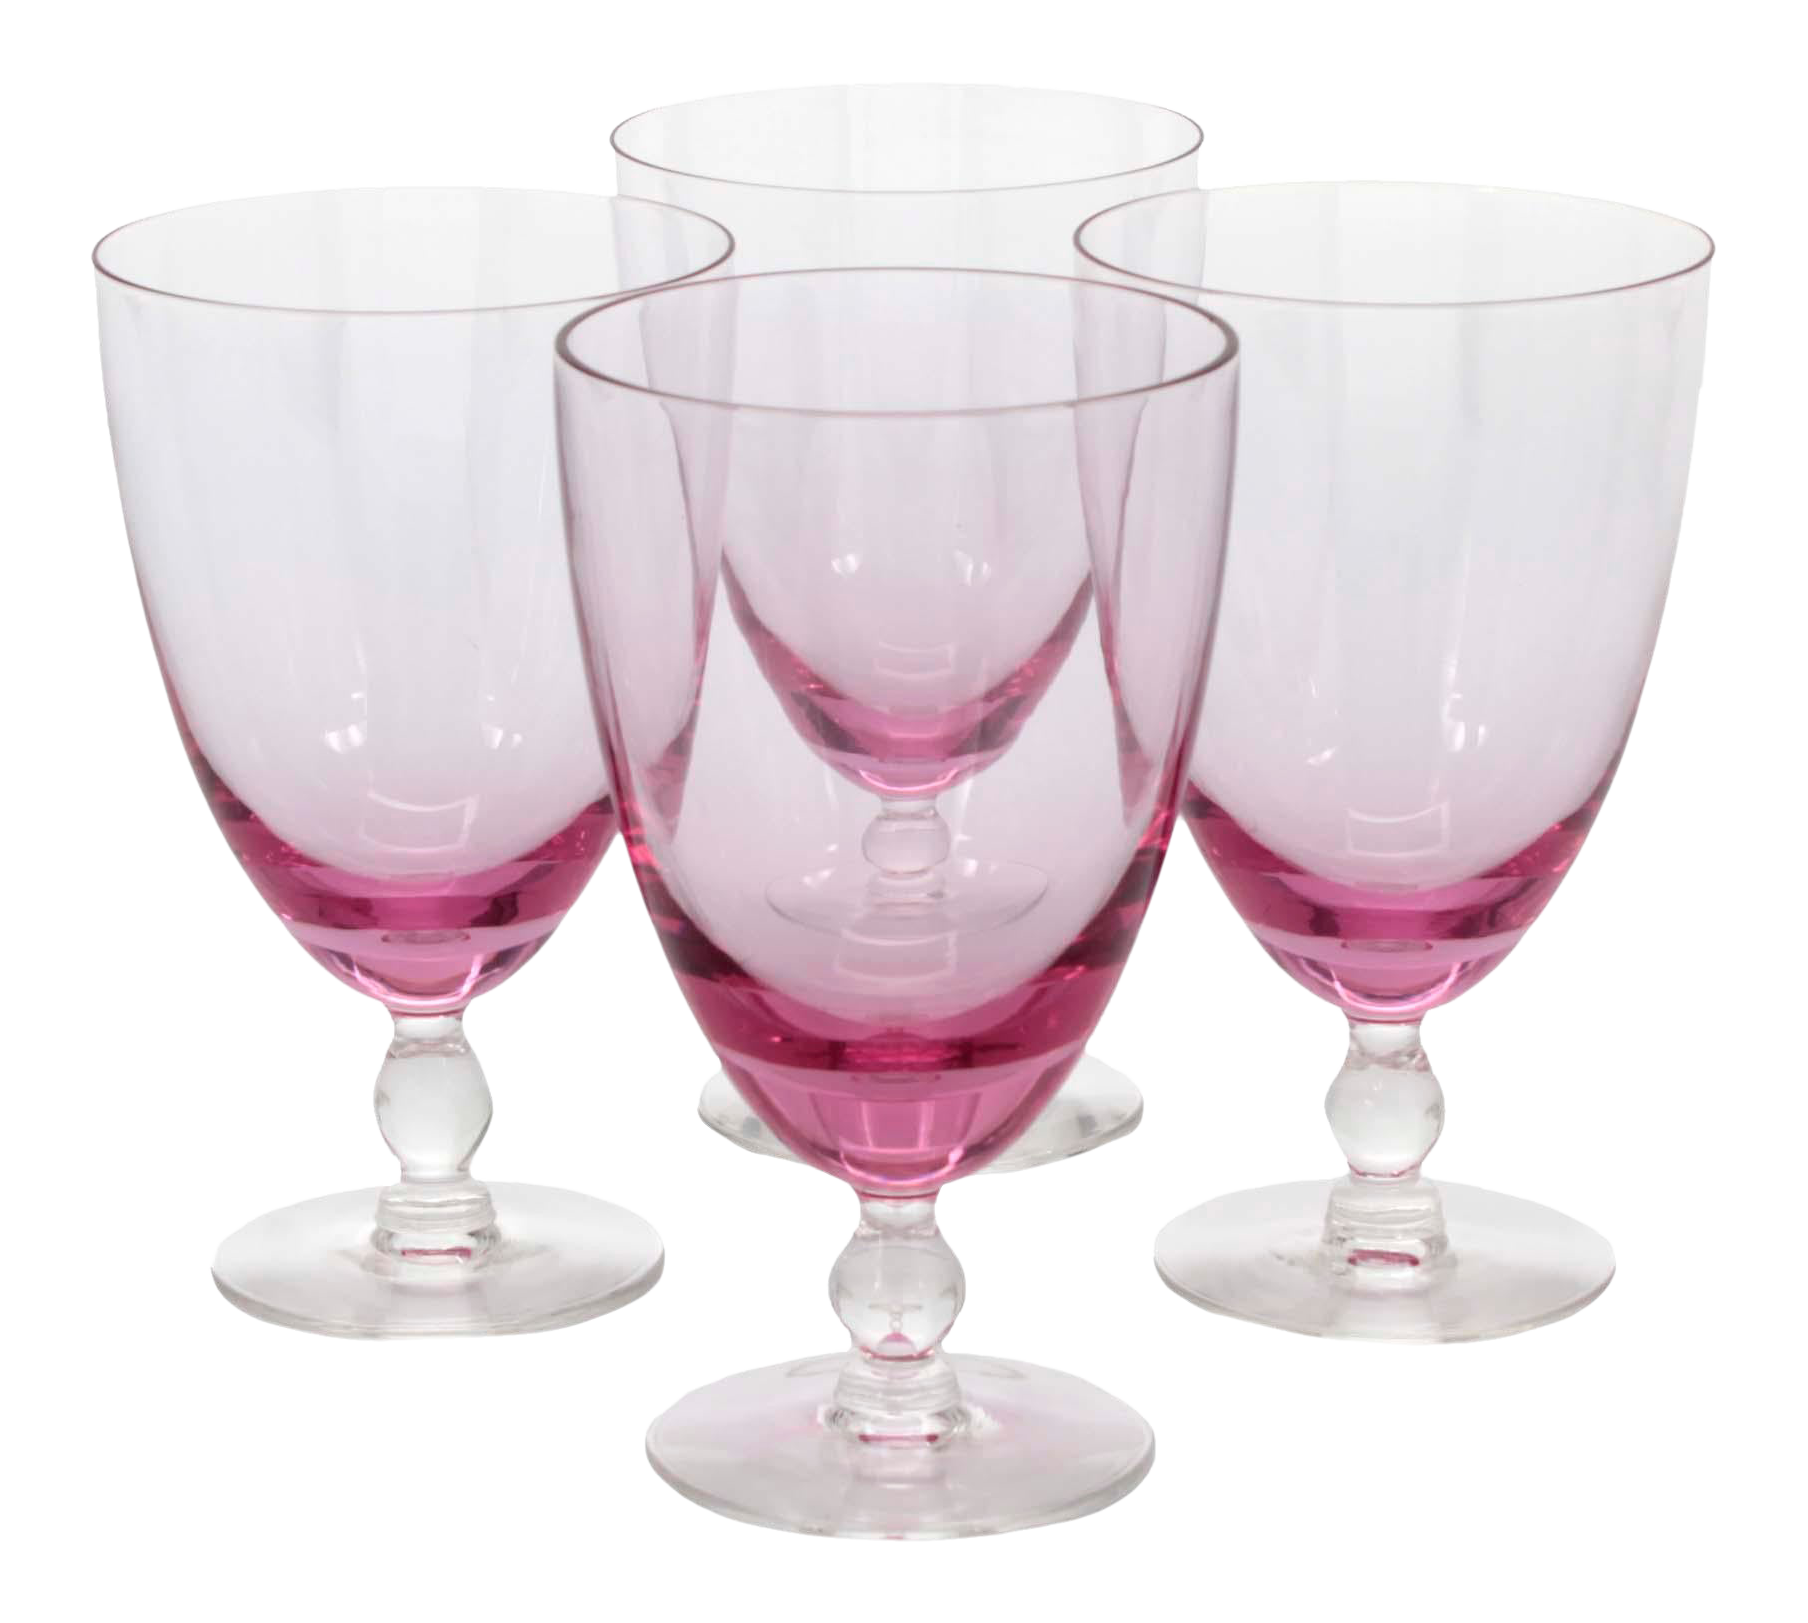 Pale Pink Vintage Goblet Glasses